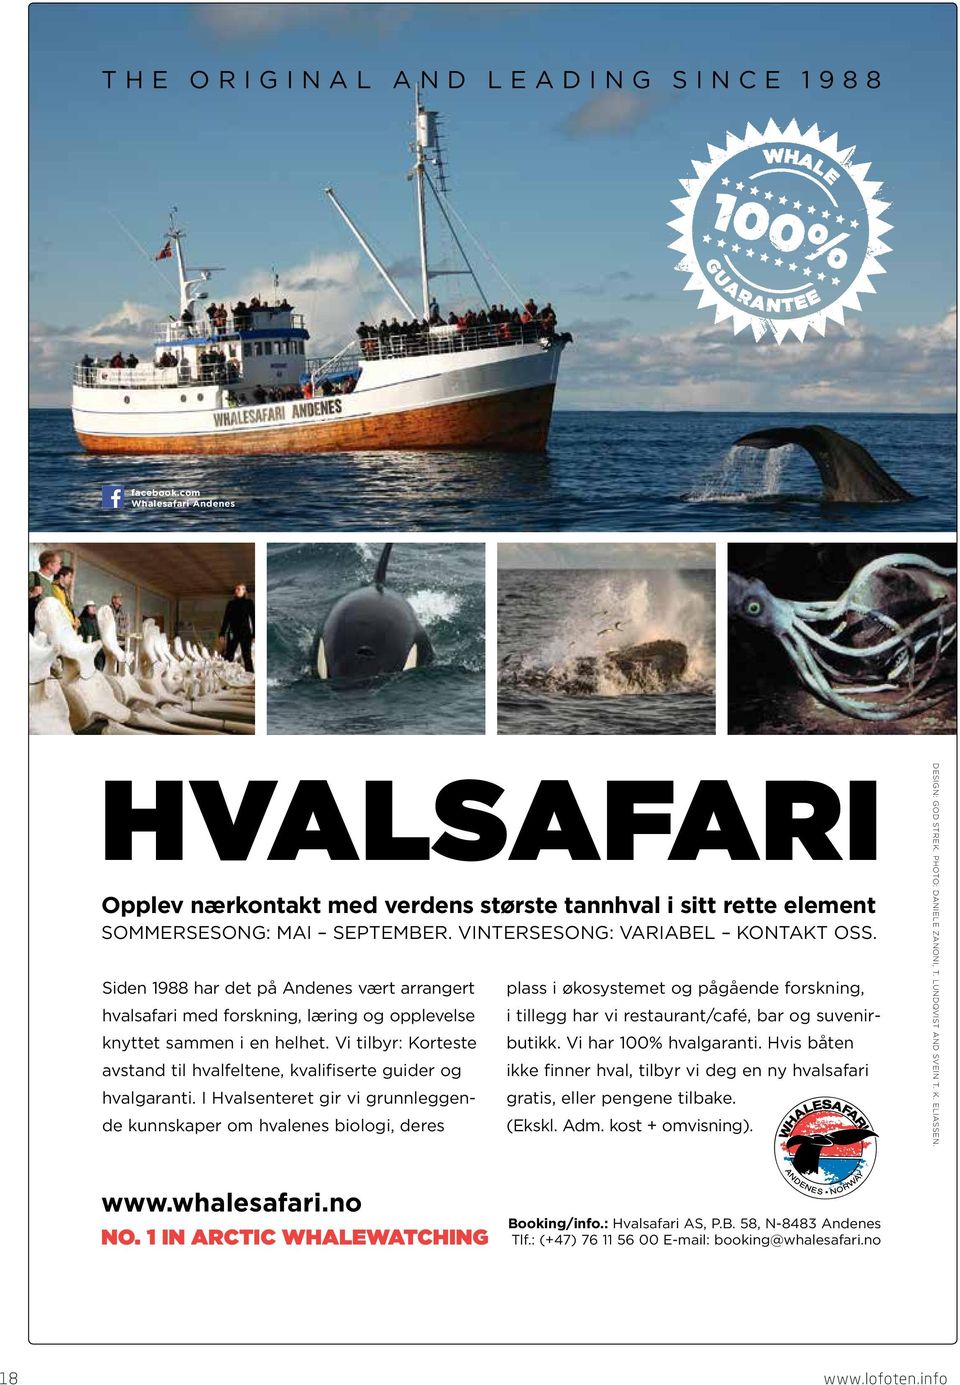 Vi tilbyr: Korteste avstand til hvalfeltene, kvalifiserte guider og hvalgaranti.